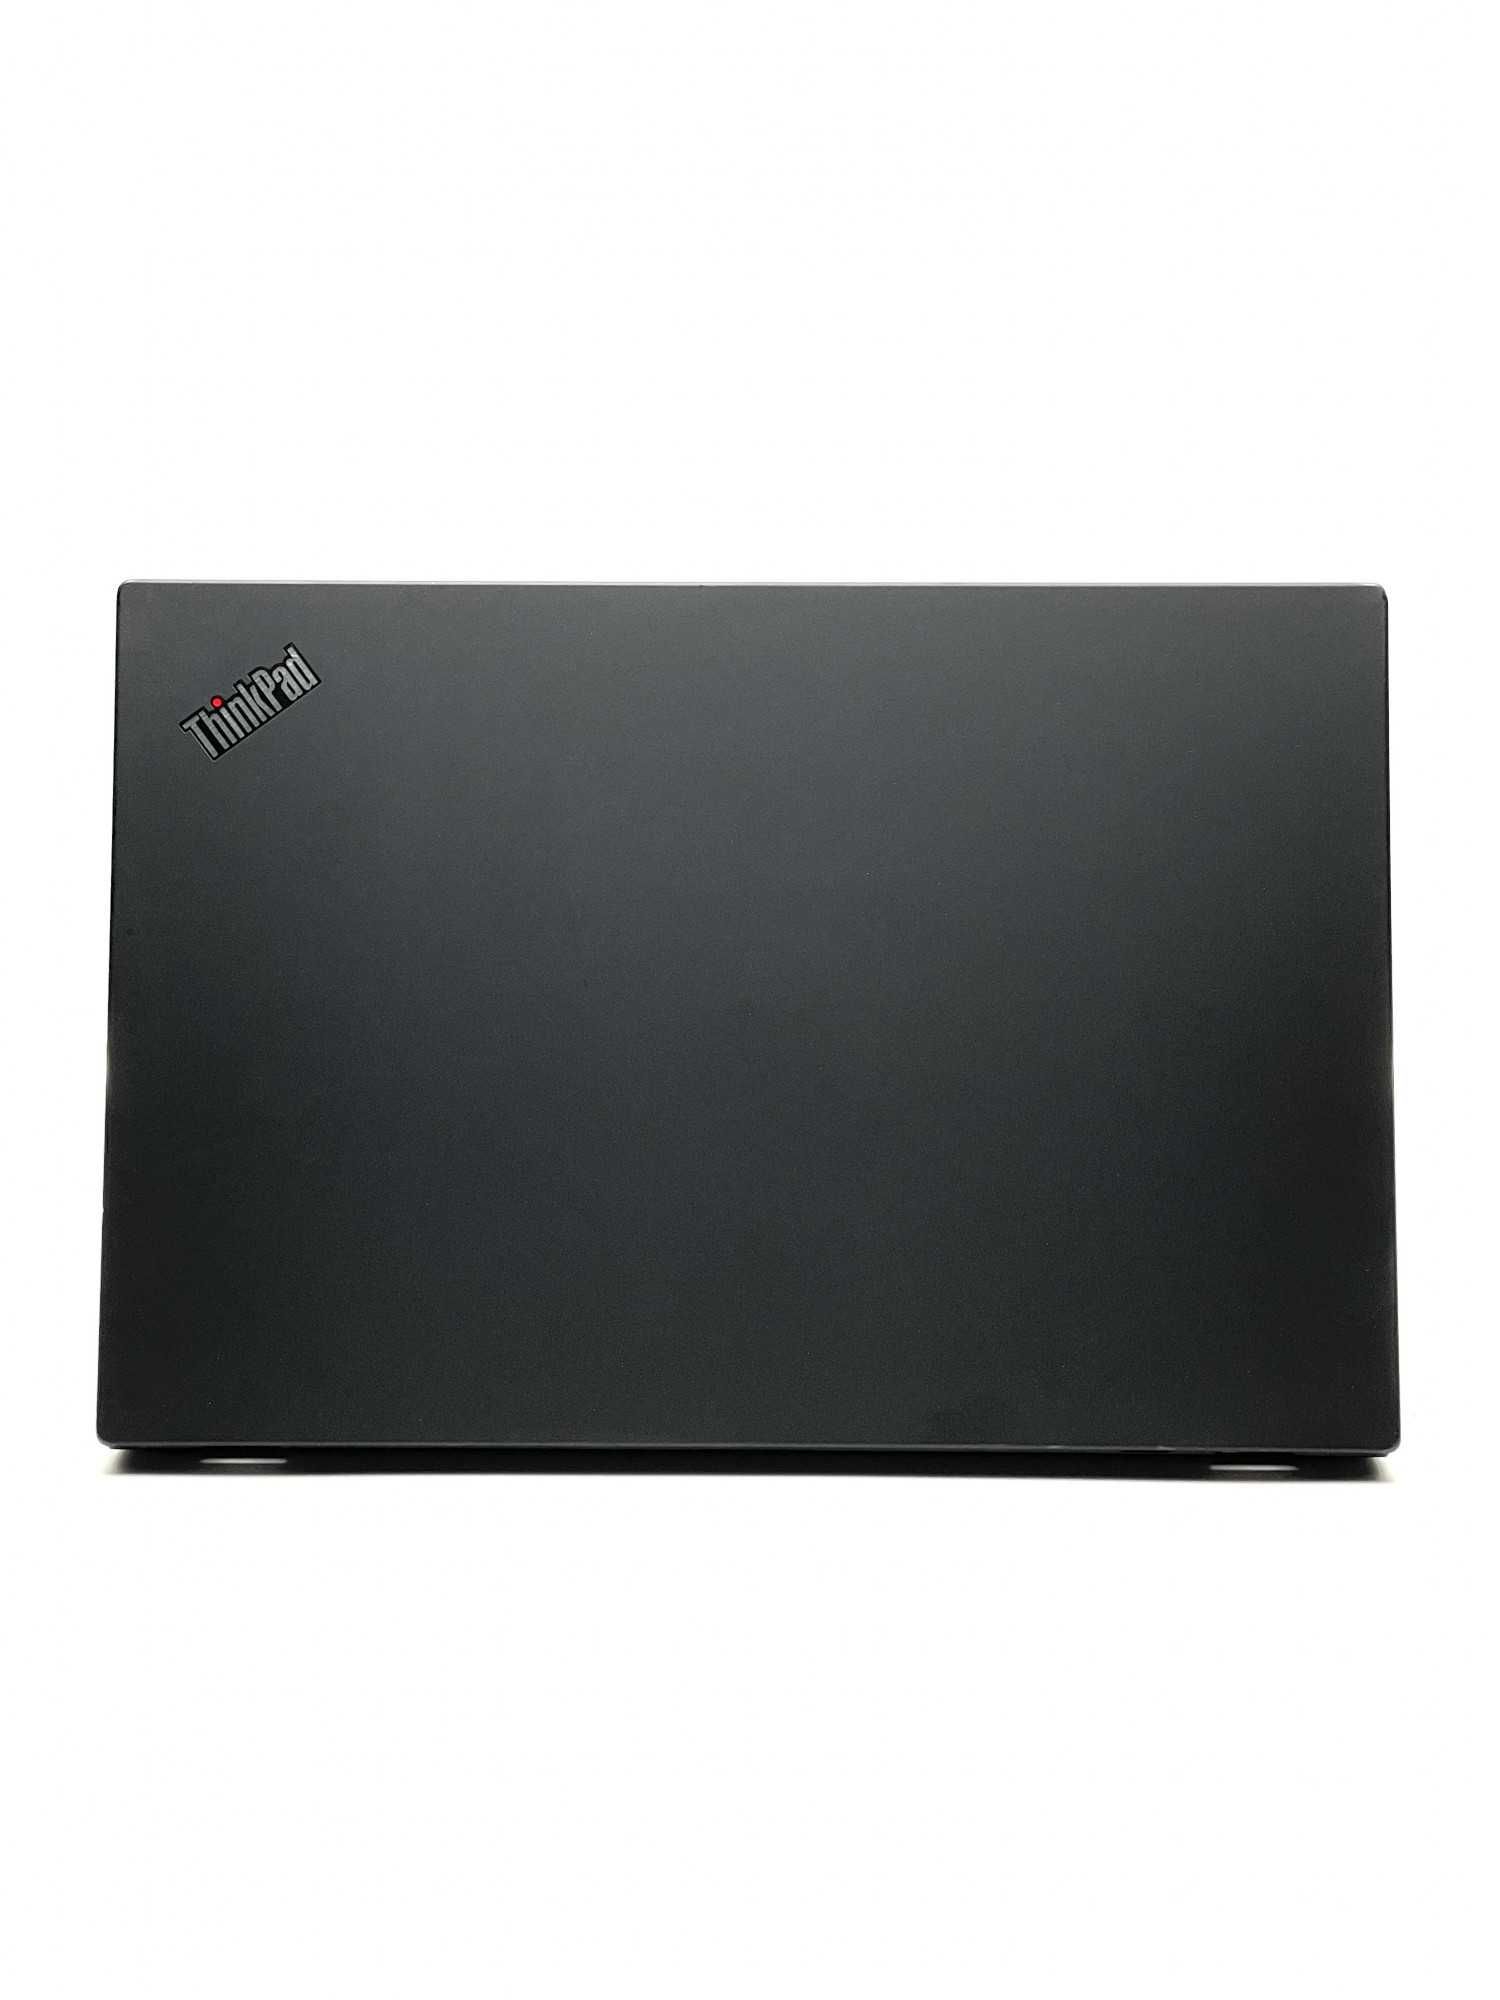 Lenovo ThinkPad T590 | 15.6" FHD IPS | i5-8265U 3,9 GHz | NVIDIA